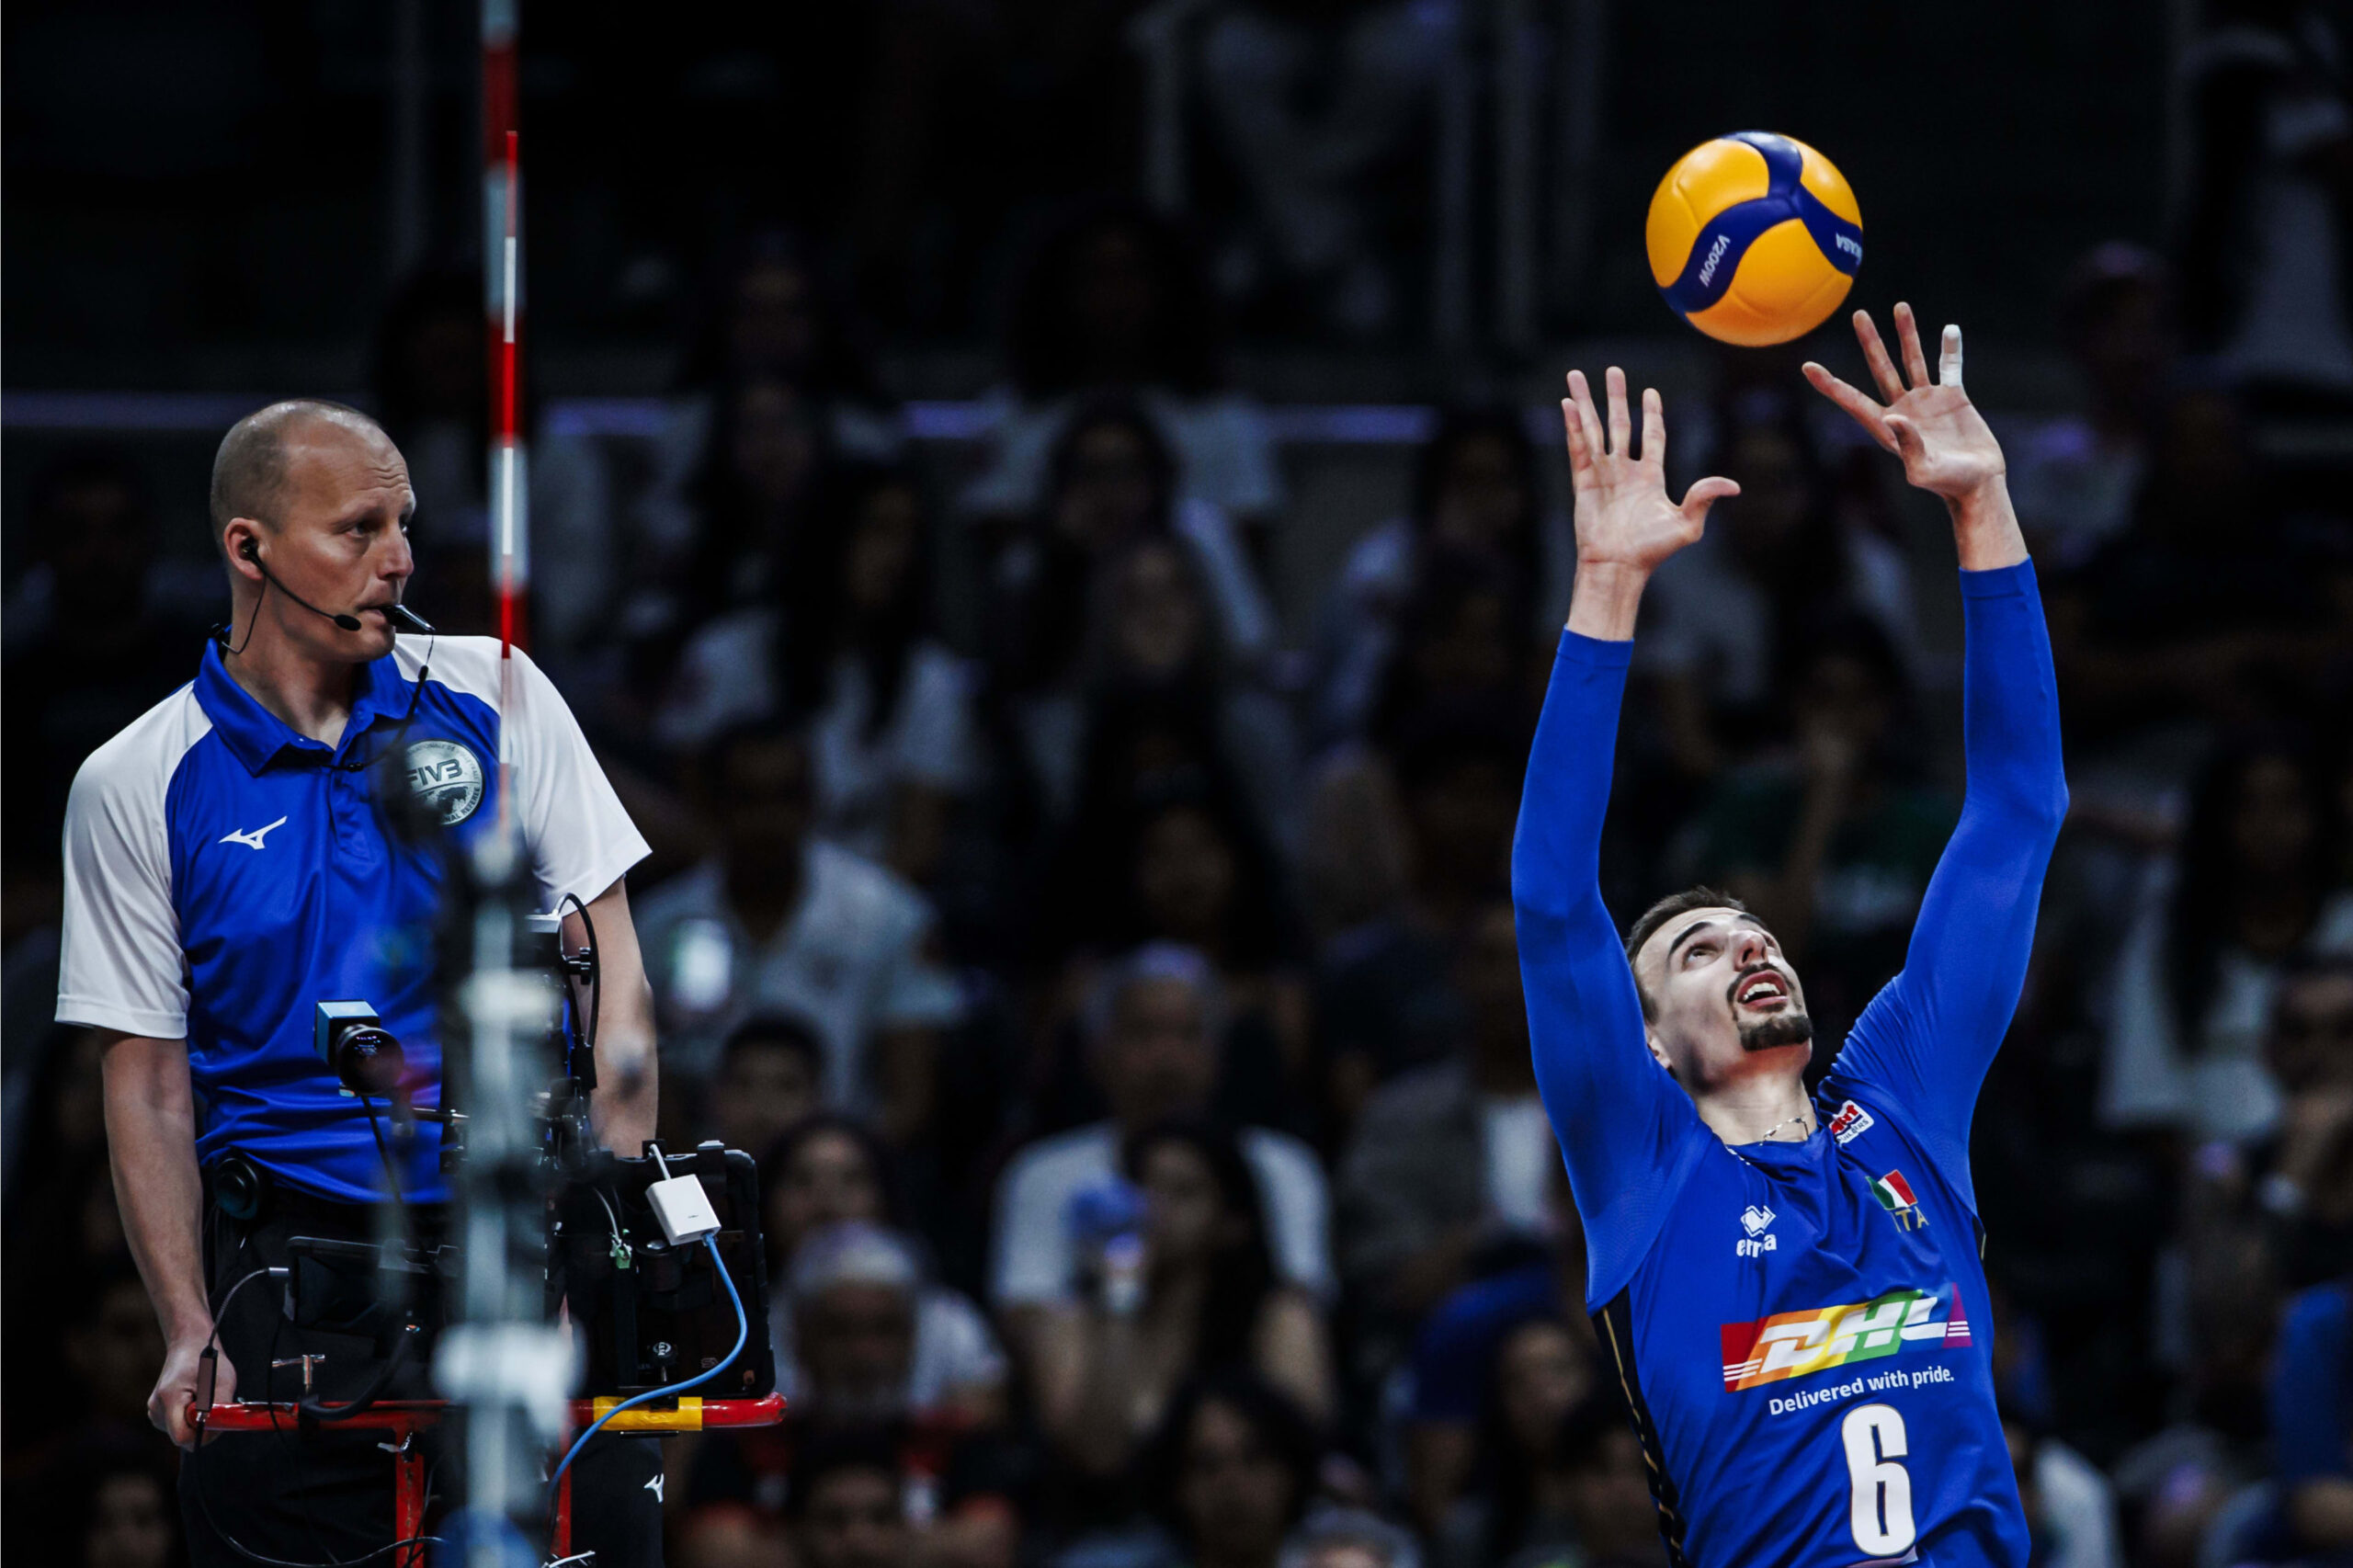 Volley, Simone Giannelli: “Era la prima partita e dobbiamo rodarci, ma vincere non è mai scontato”